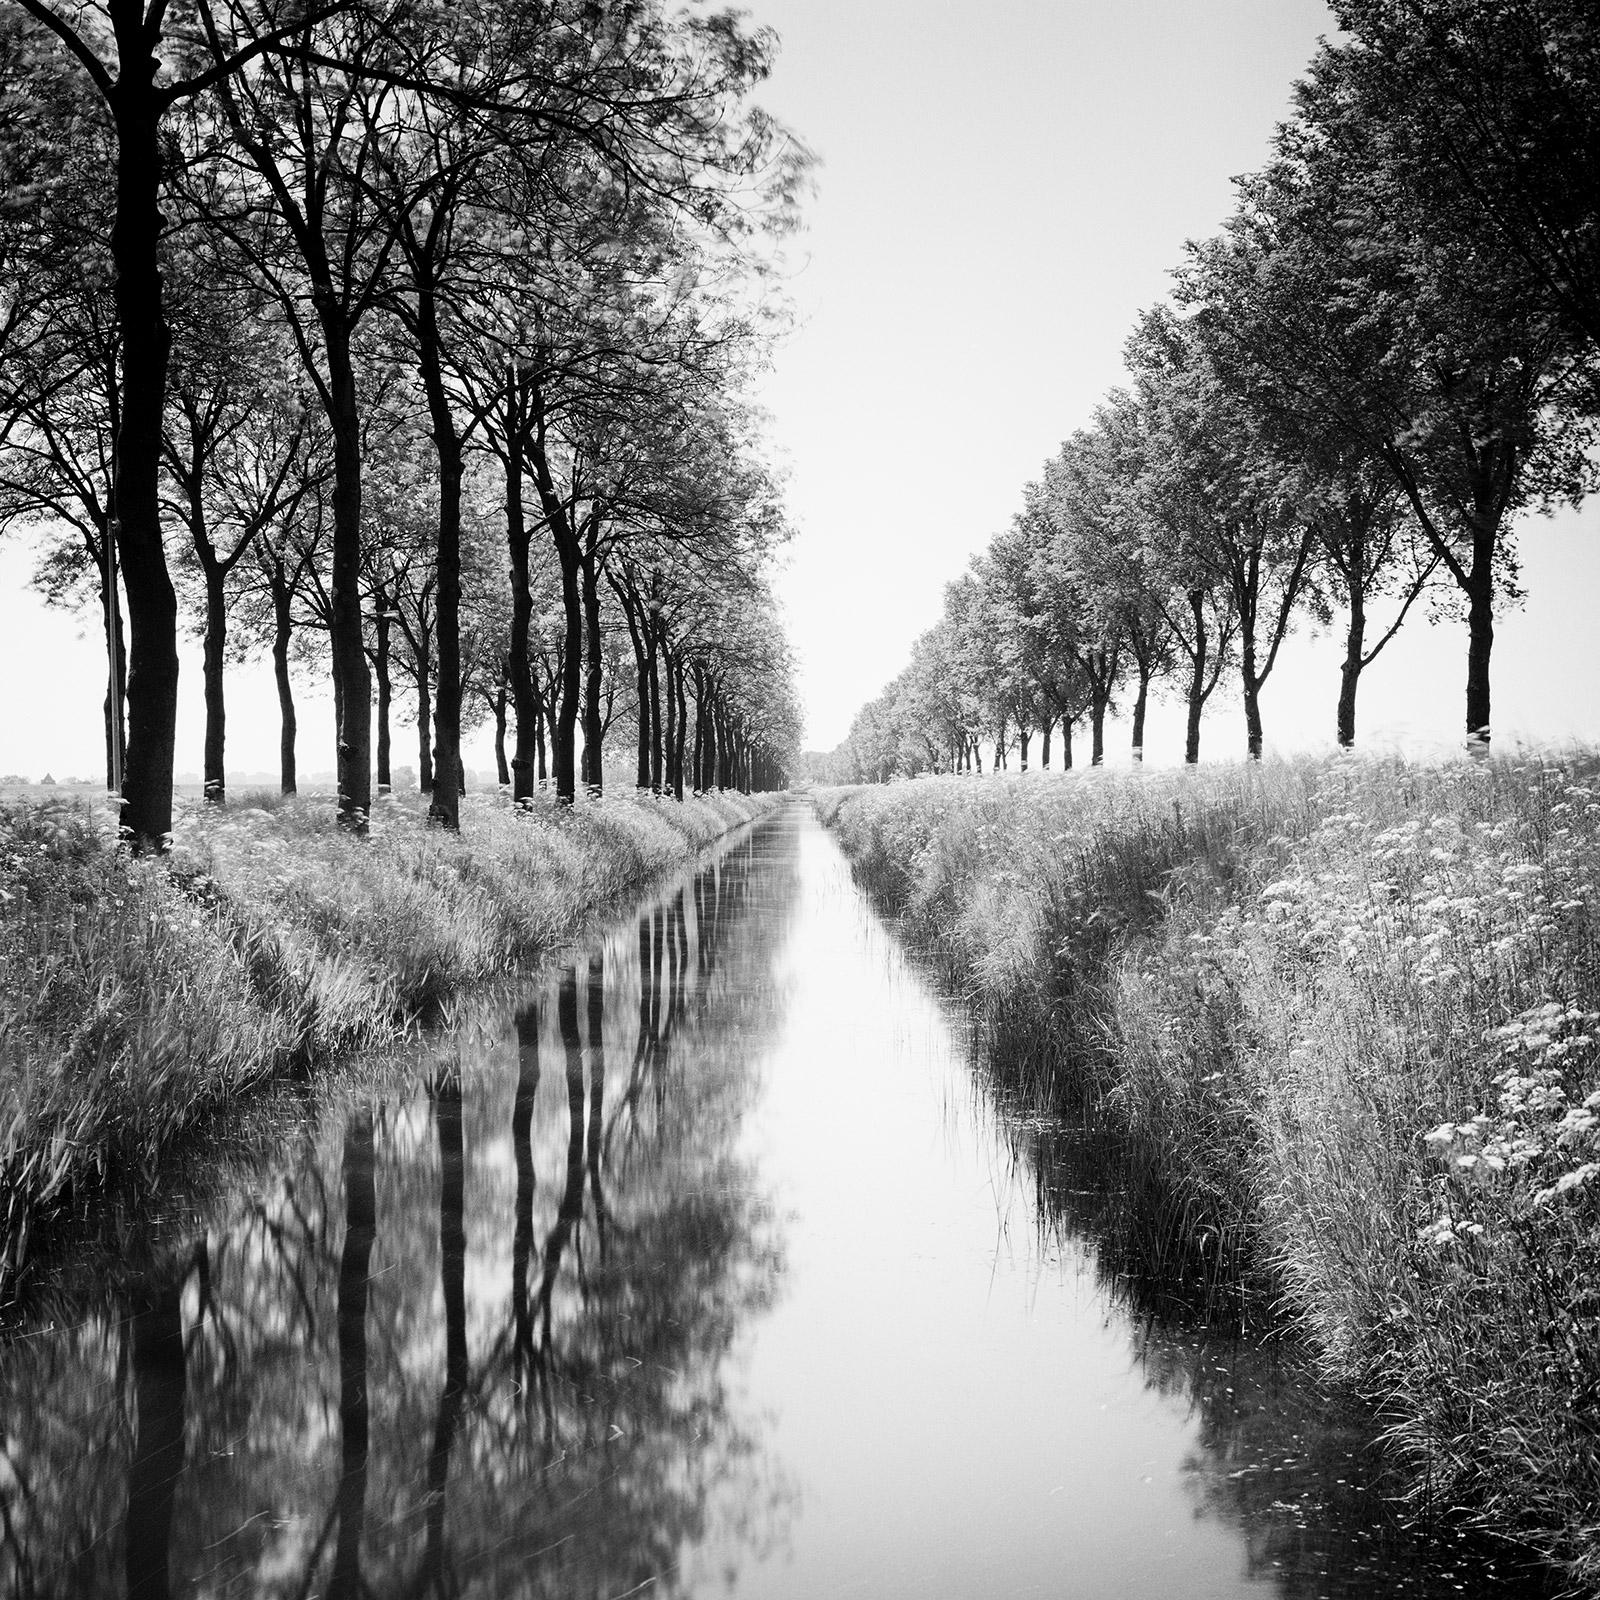 Gerald Berghammer Black and White Photograph – Gracht, Tree Avenue, Wasserspiegelung, Schwarz-Weiß-Fotografiedruck